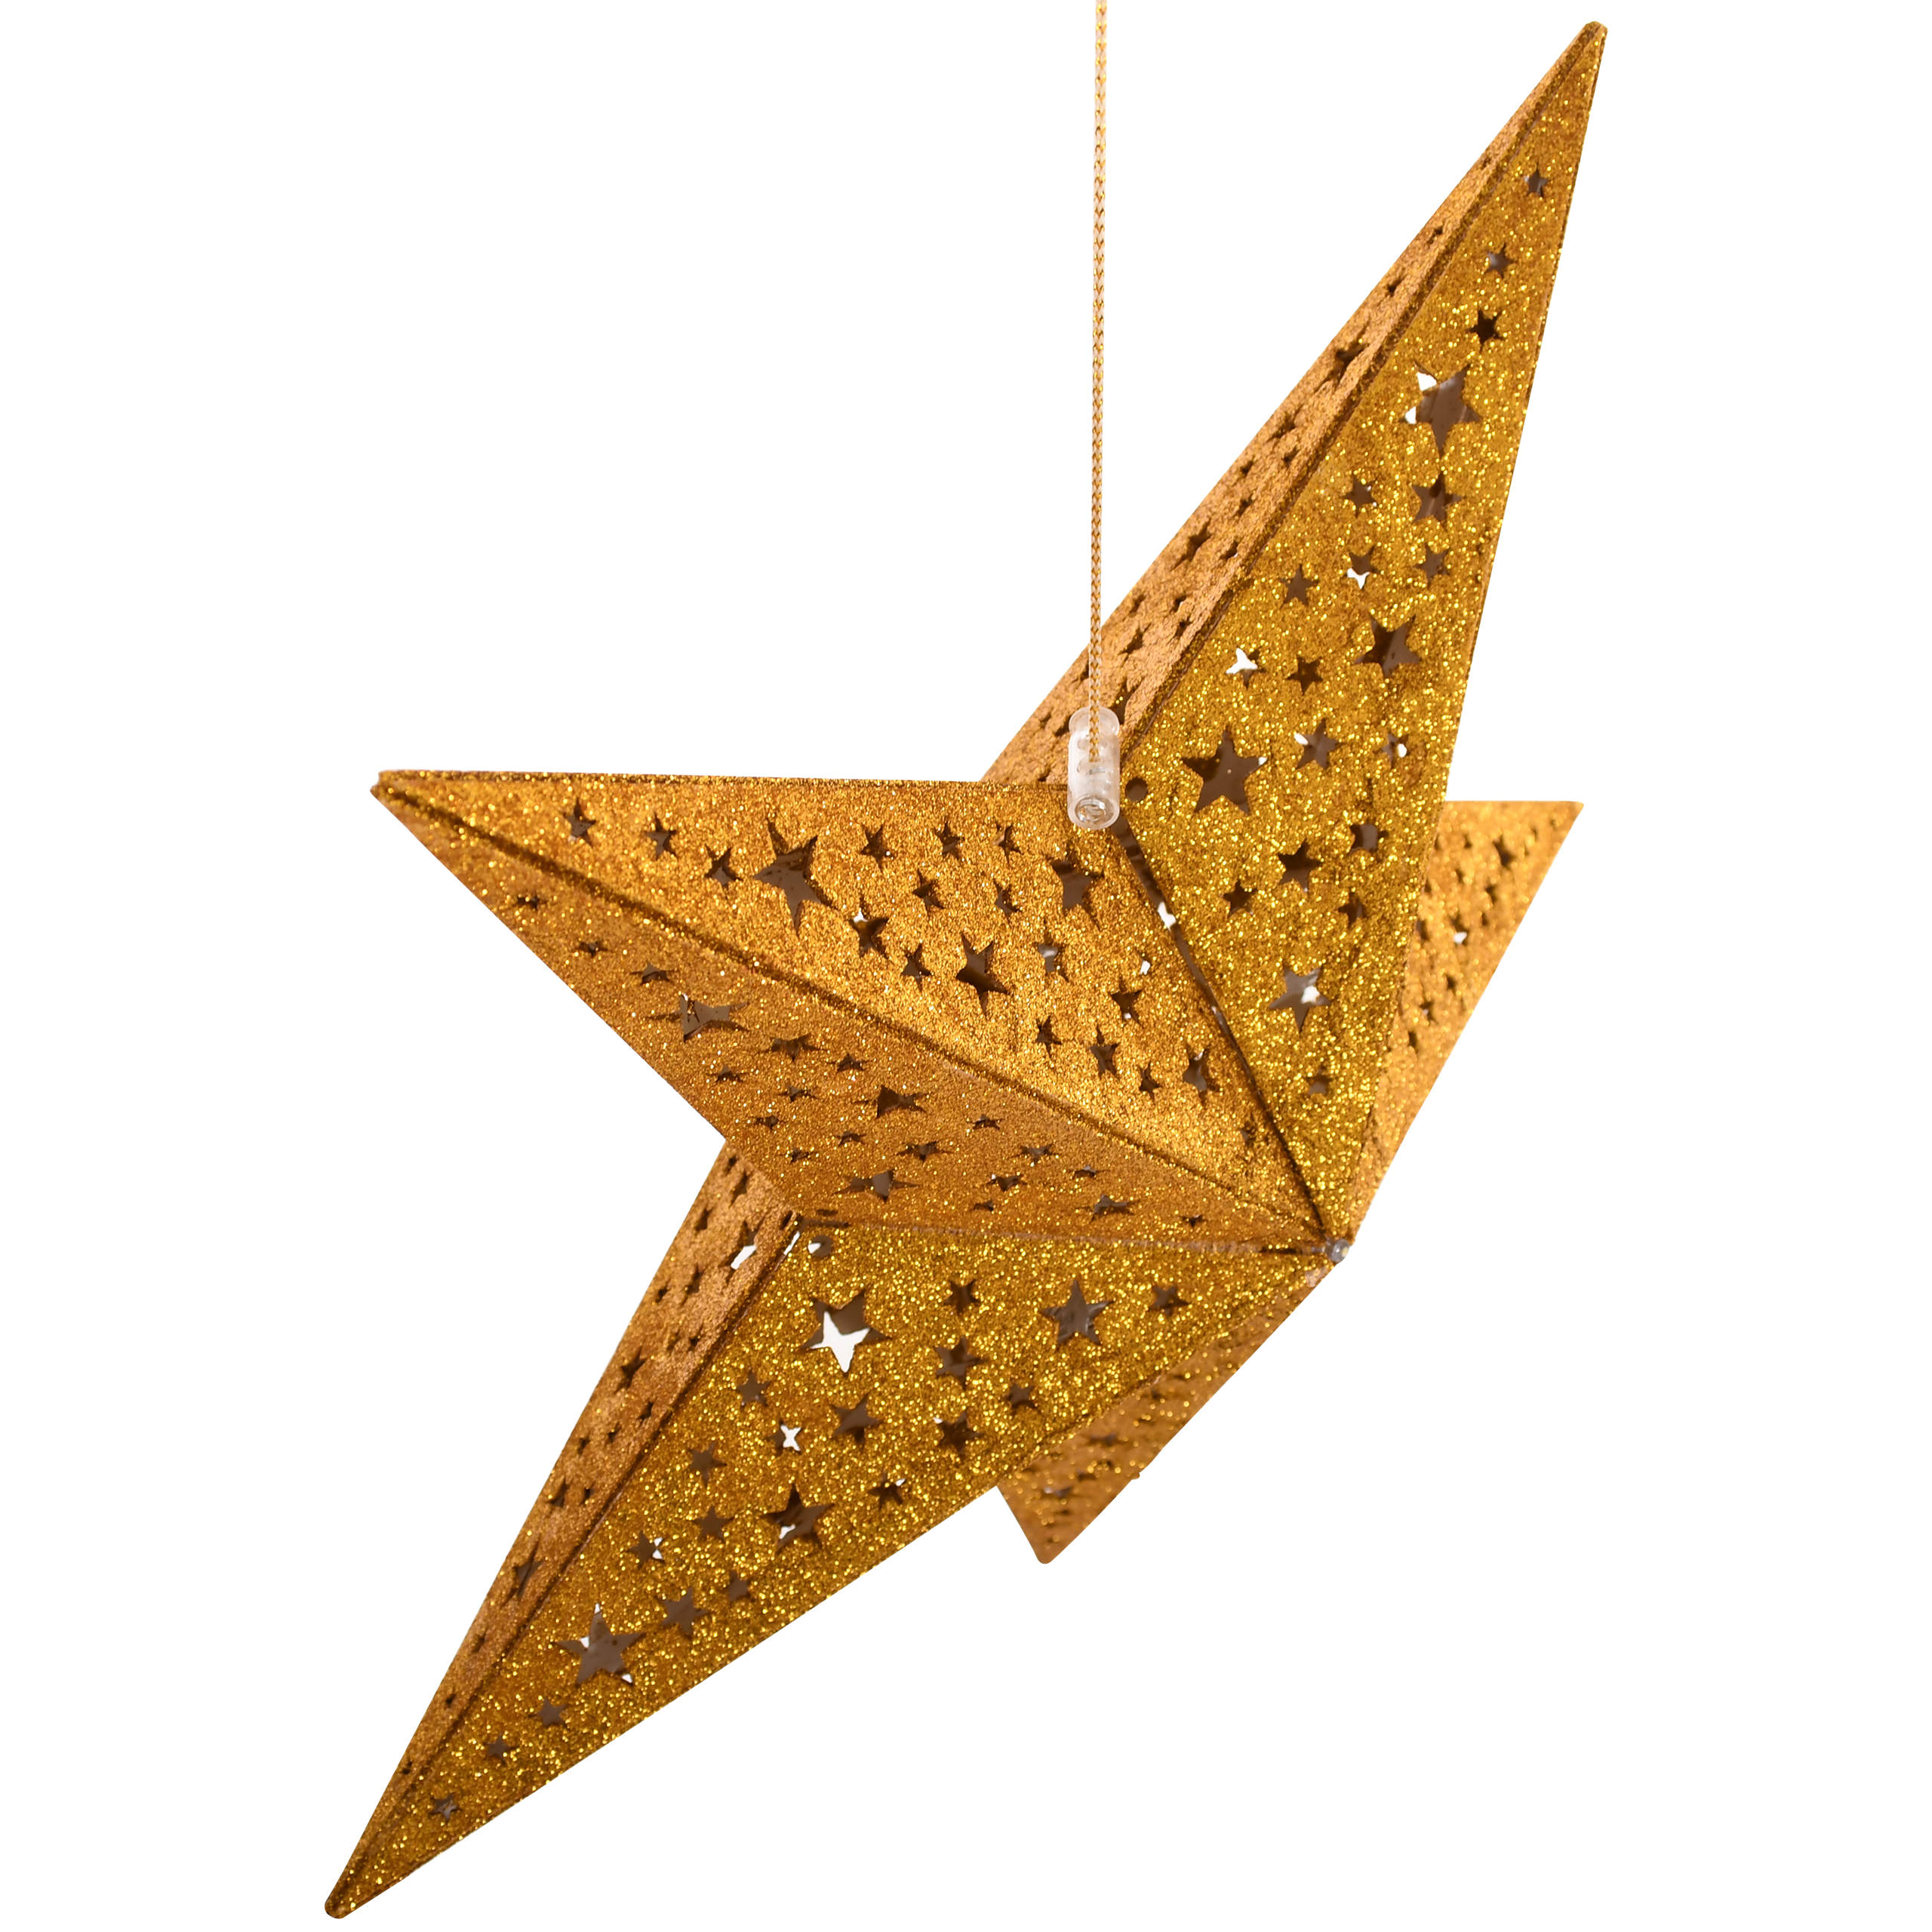 Raburg LED Deko-Weihnachtsstern Gold mit Glitzer, Holz, ca. 40 cm Ø, 10 LEDs in Warm-Weiß